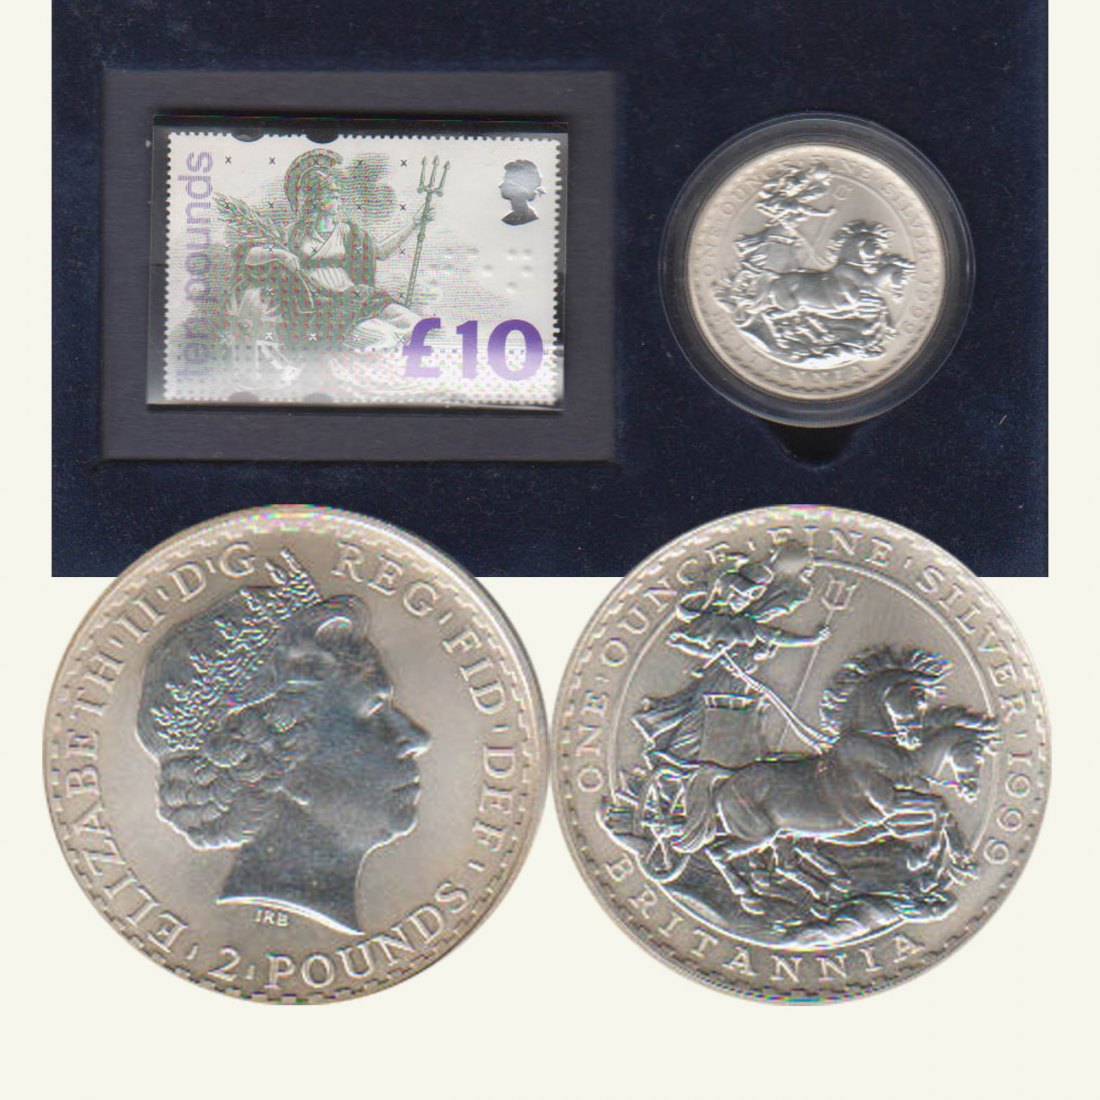  Großbritannien 2 Pfund *Britannia* mit 10 Pfund Briefmarke 1999 1oz Silber   